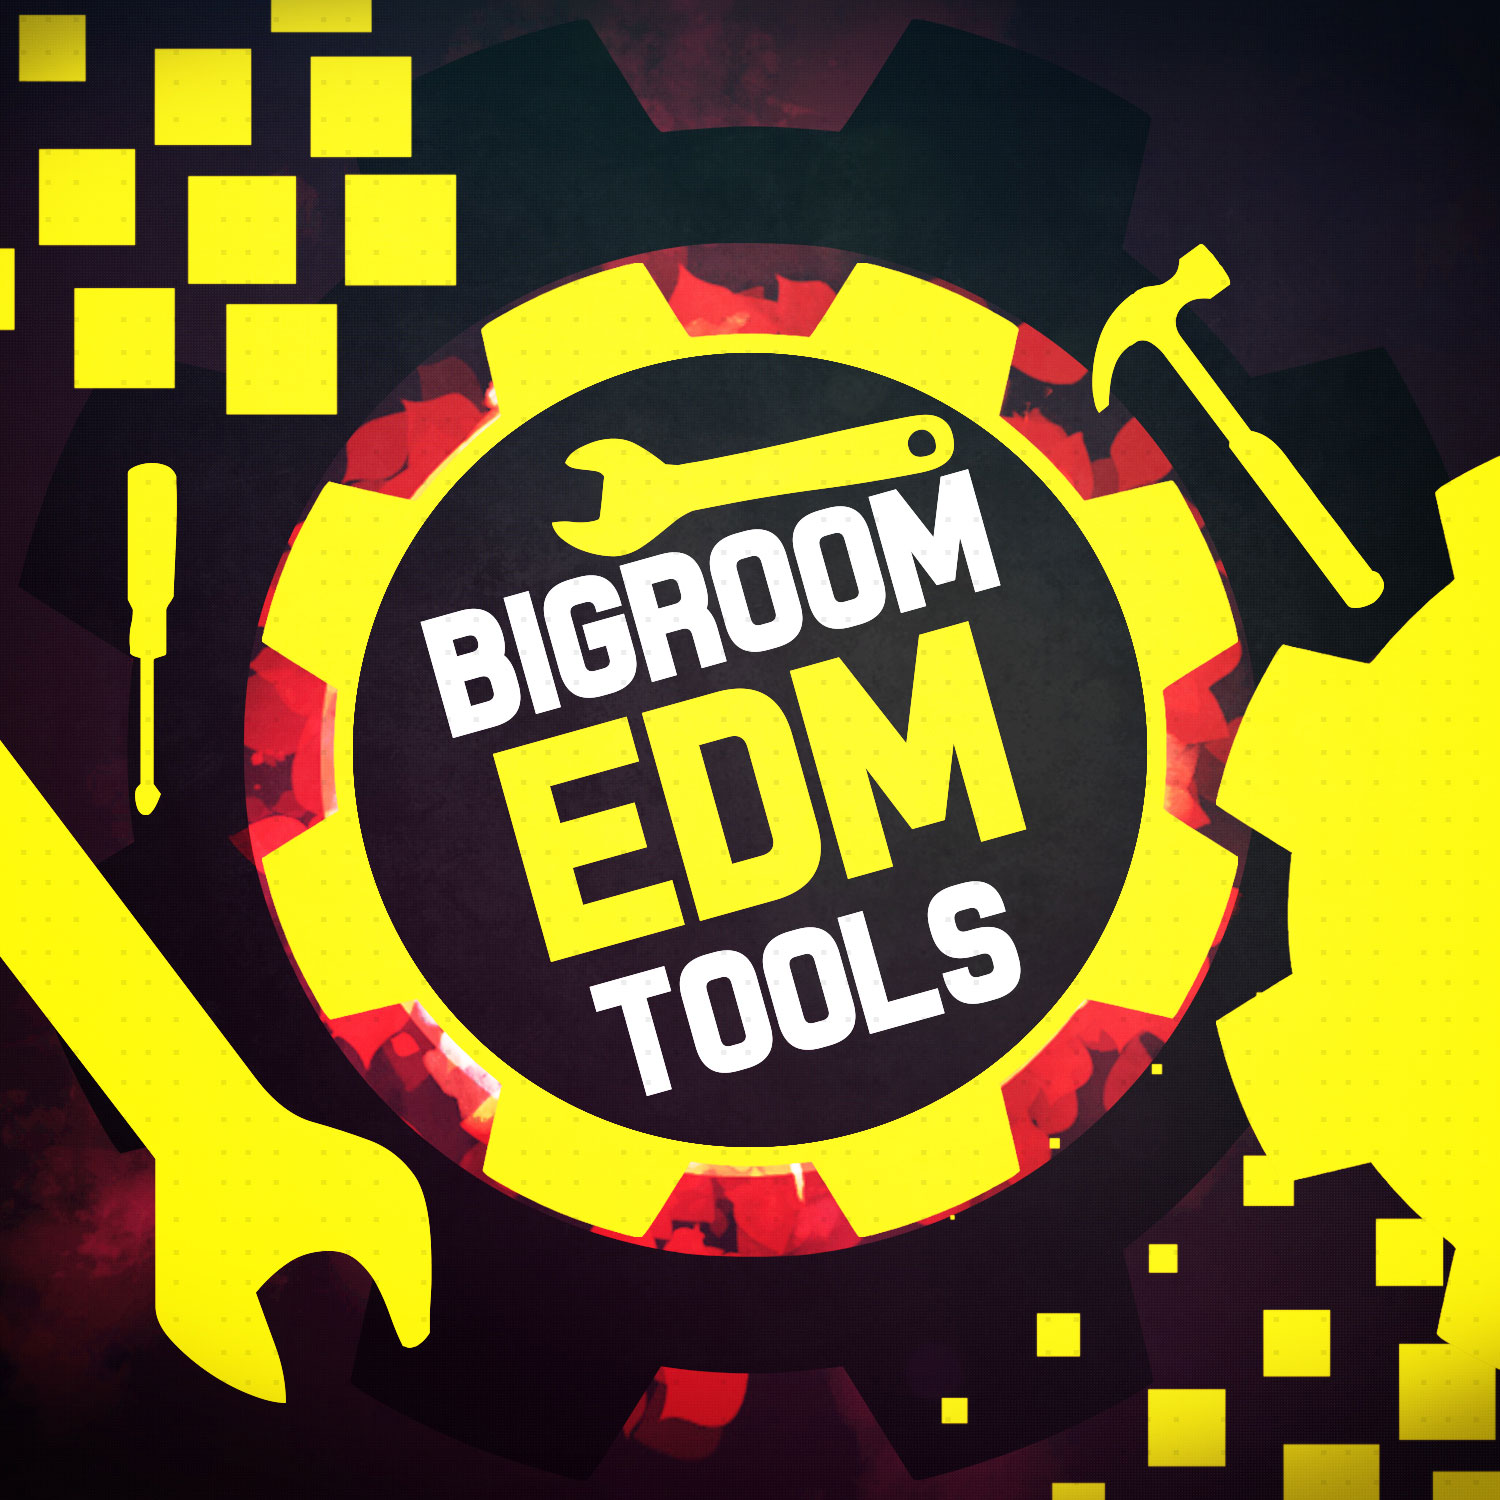 Big Room EDM Tools-0